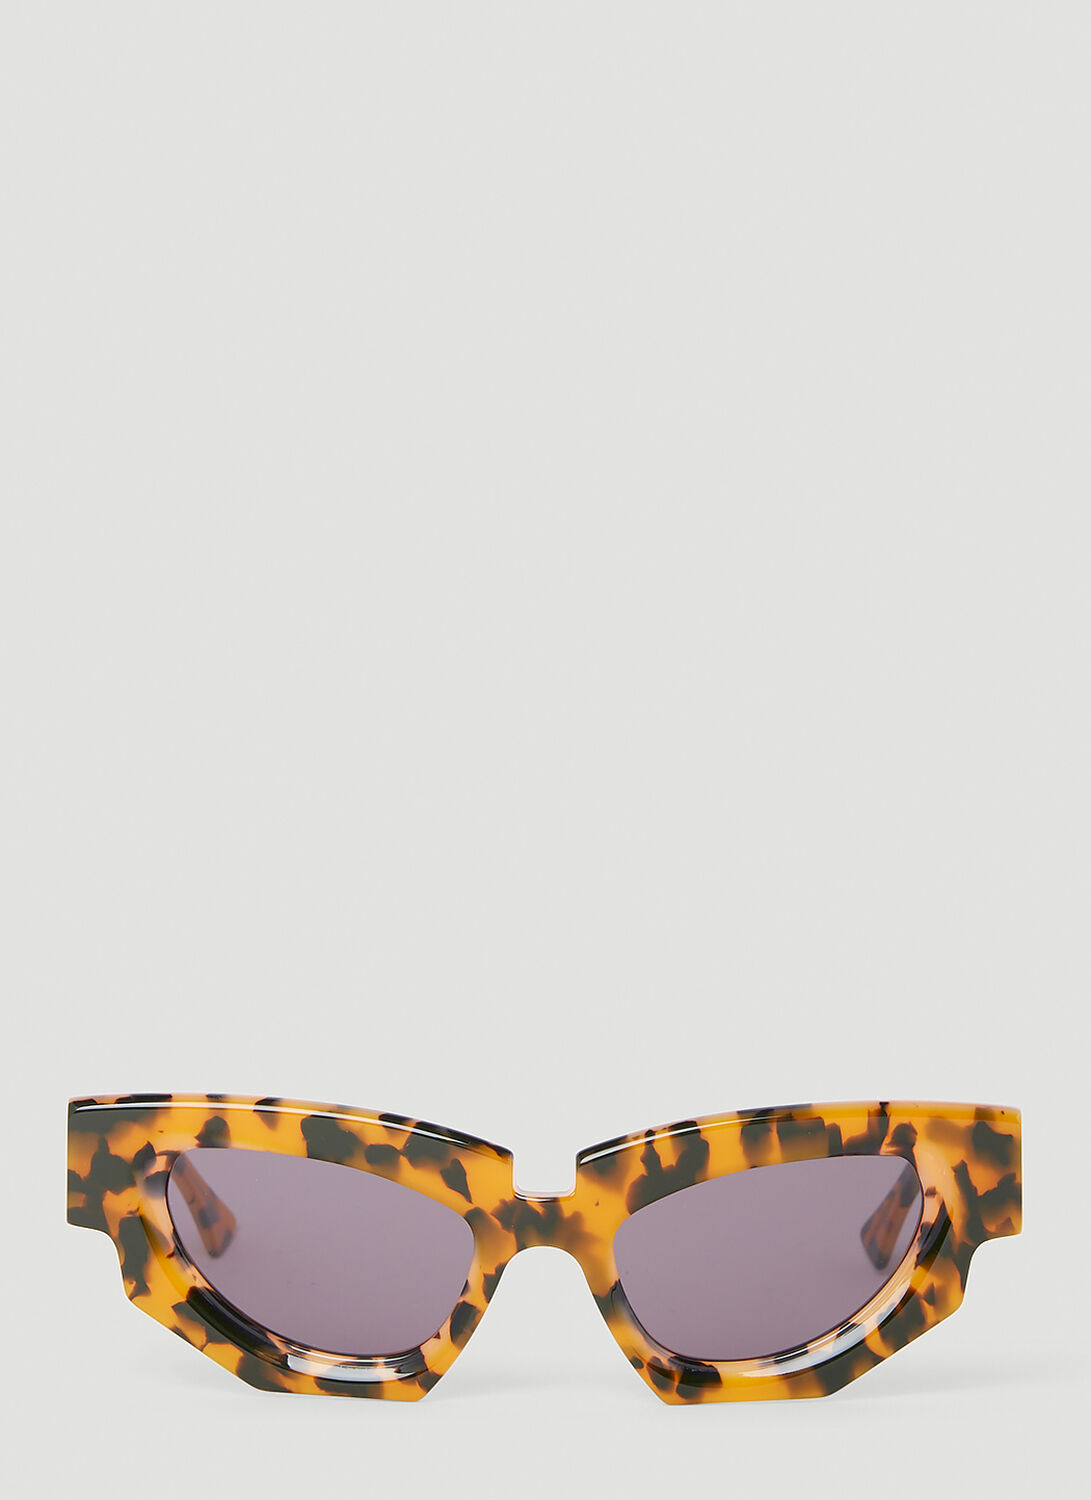 Kuboraum F5 Tortoiseshell Sunglasses